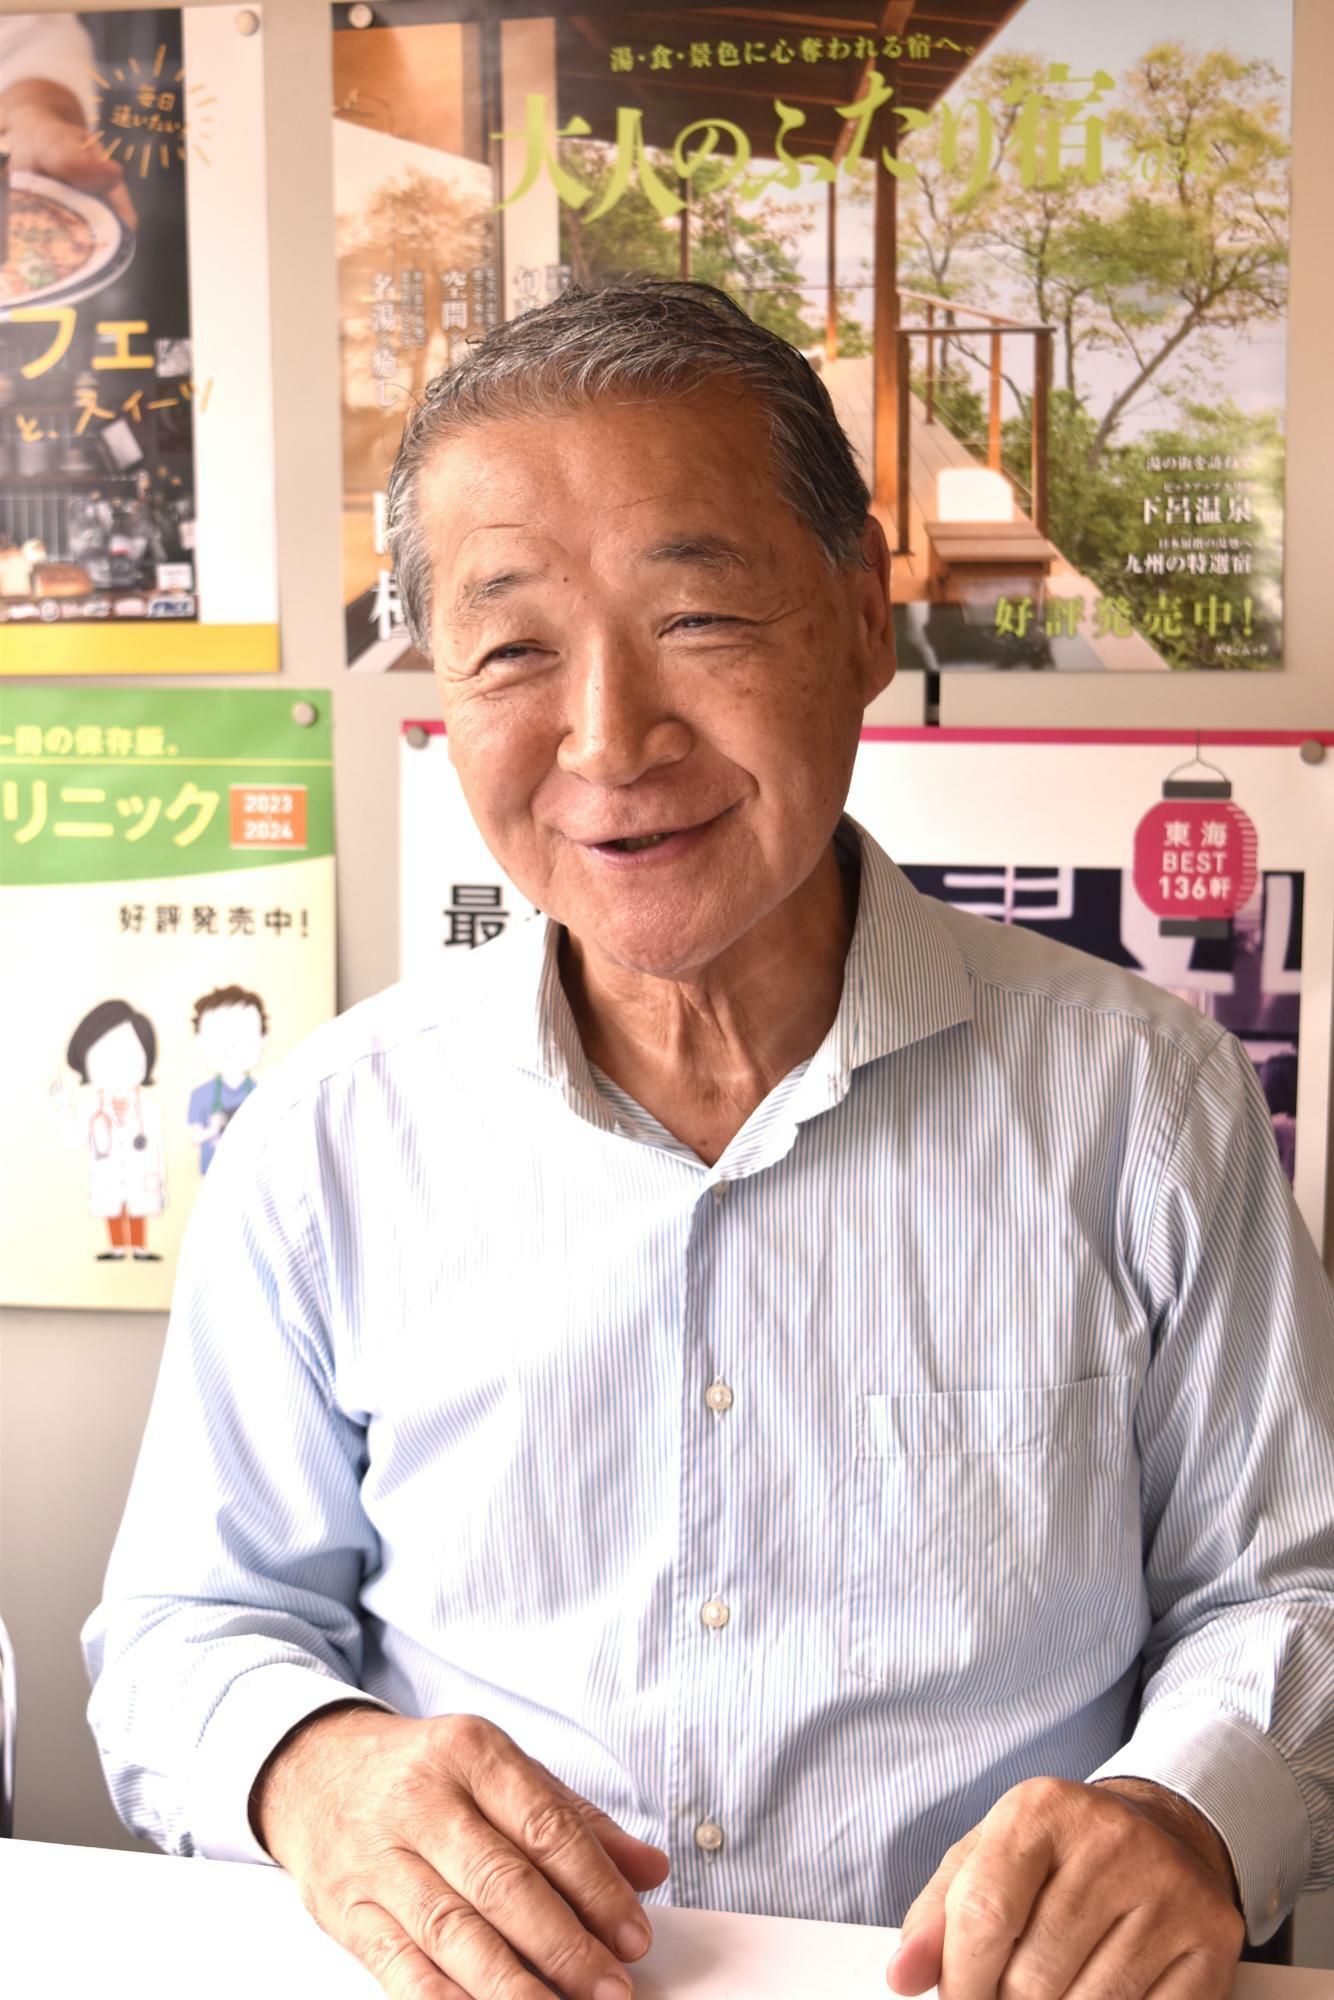 『ケリー』の生みの親でゲイン創業者の藤井英明さん。現在も、街の活性化をテーマとした様々な活動に携わる